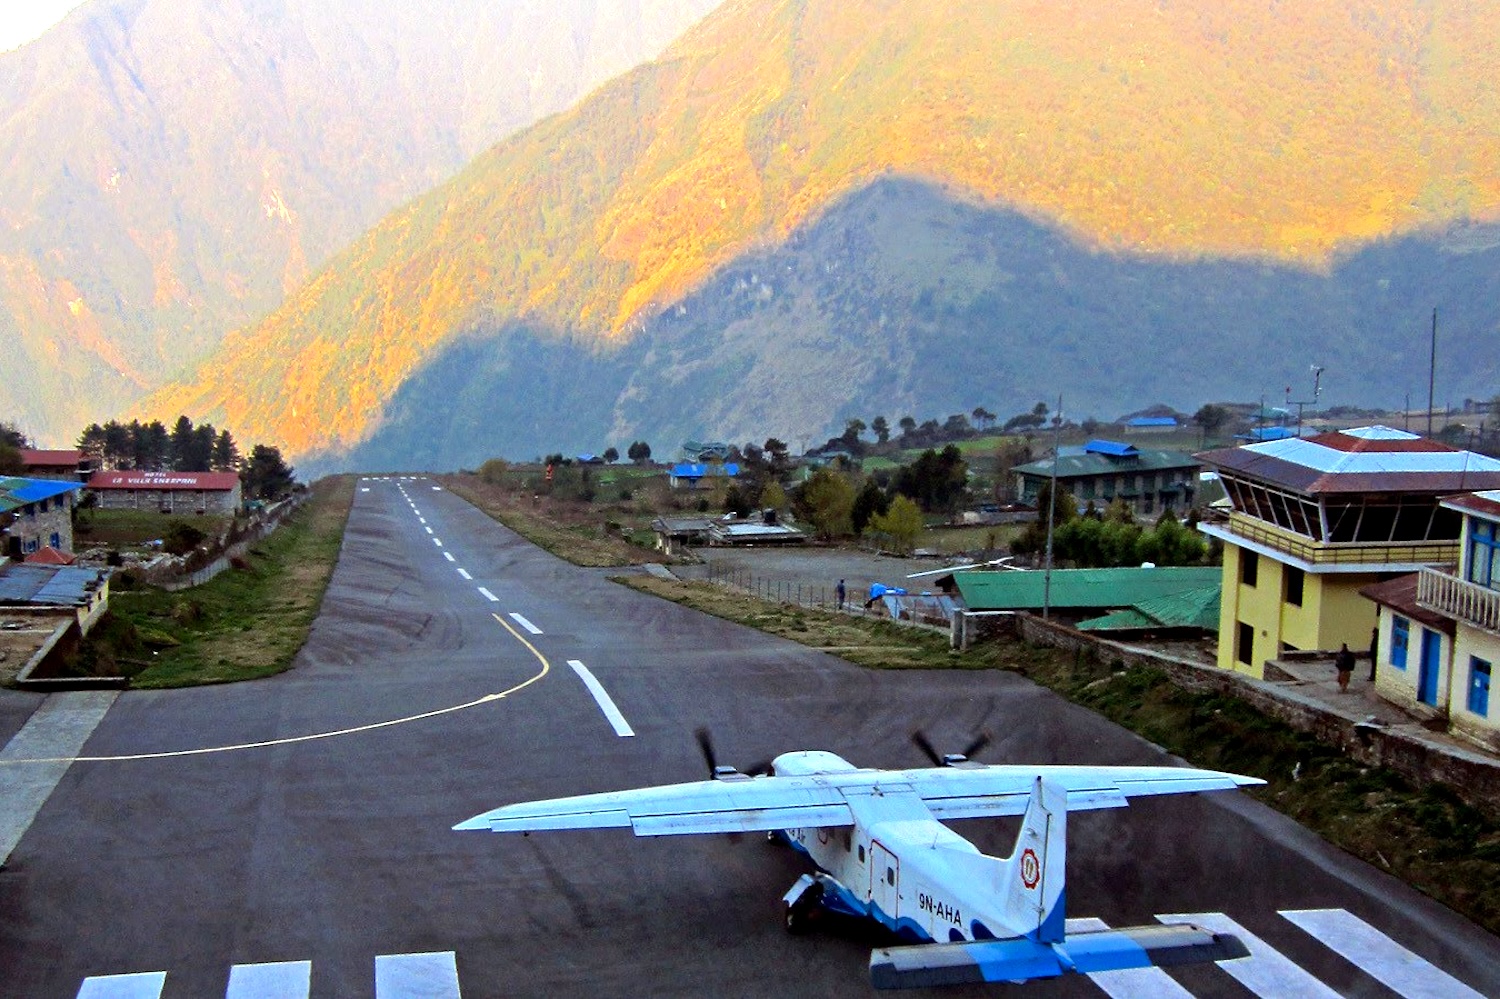 Аэродром в скале. Аэропорт имени Тэнцинга и Хиллари, Непал. Аэропорт Лукла Непал. Аэропорт Тенцинг-Хиллари, Лукла, Непал. Посадочная полоса Лукла Непал.